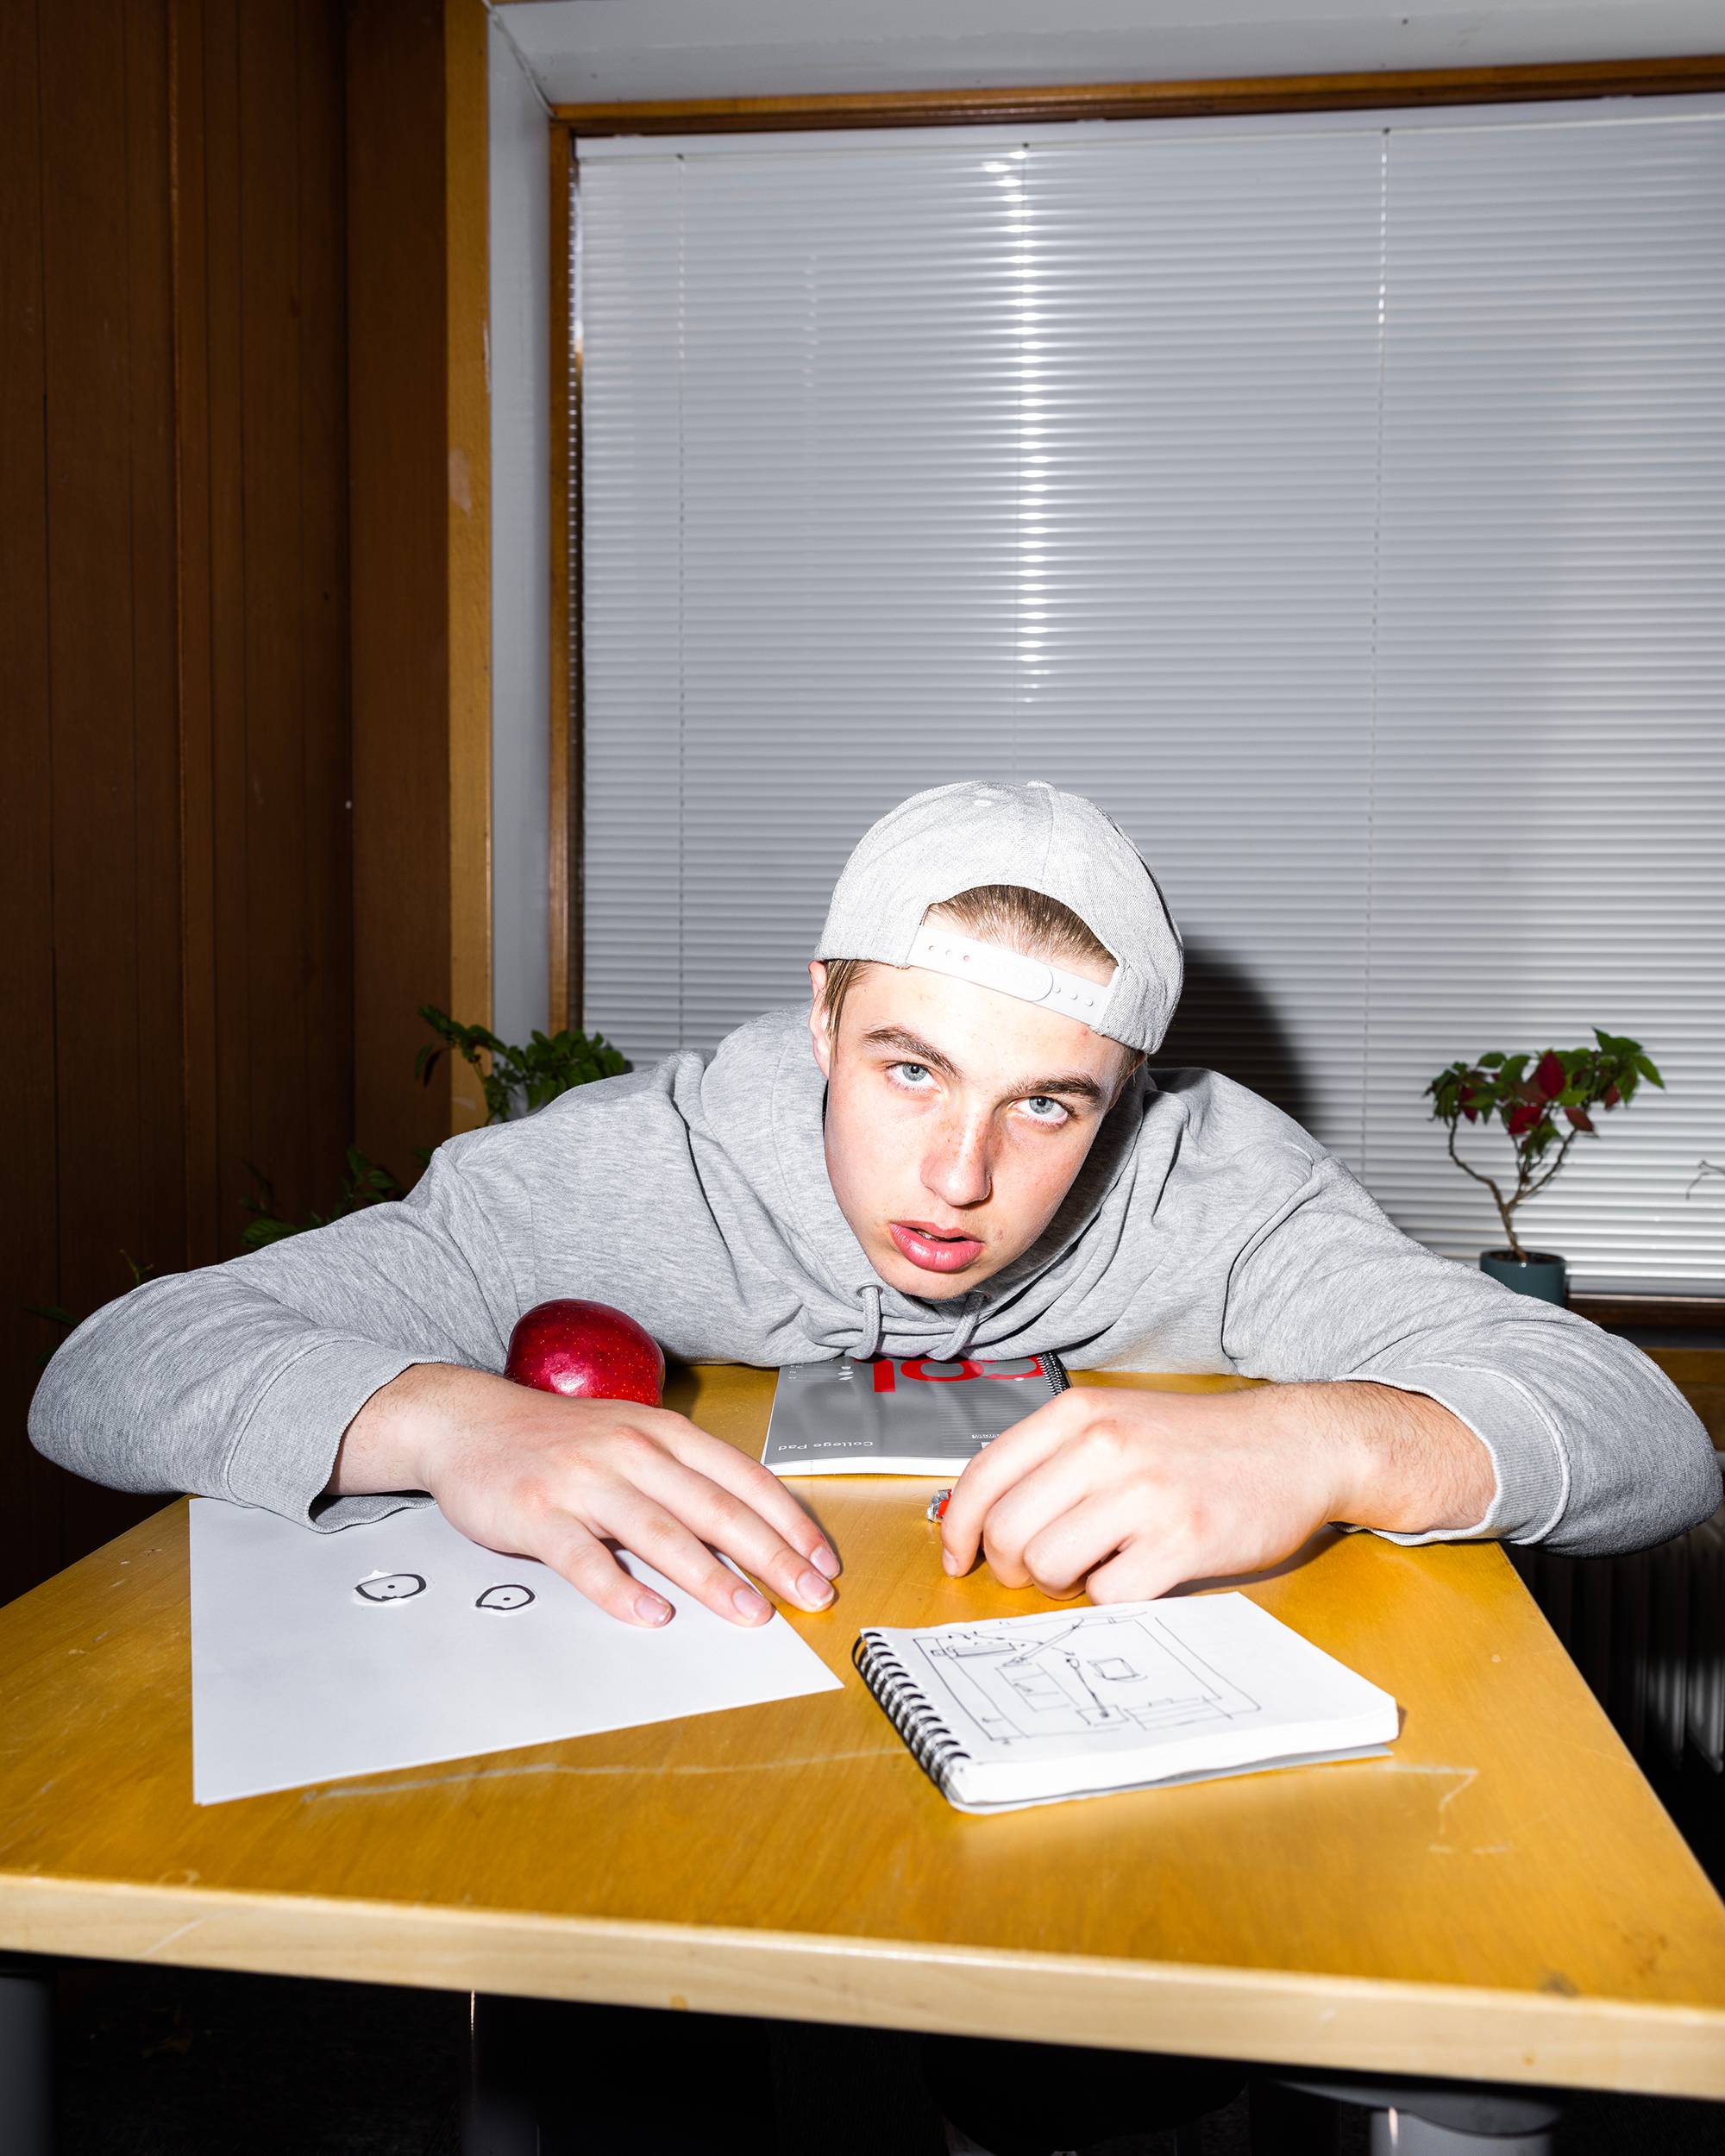 Vetle er kledd ut som skoleelev. Han har på seg caps og hettegenser. Han lener seg over pulten med et frustrert blikk. På pulten er det et eple og skrivesaker. 